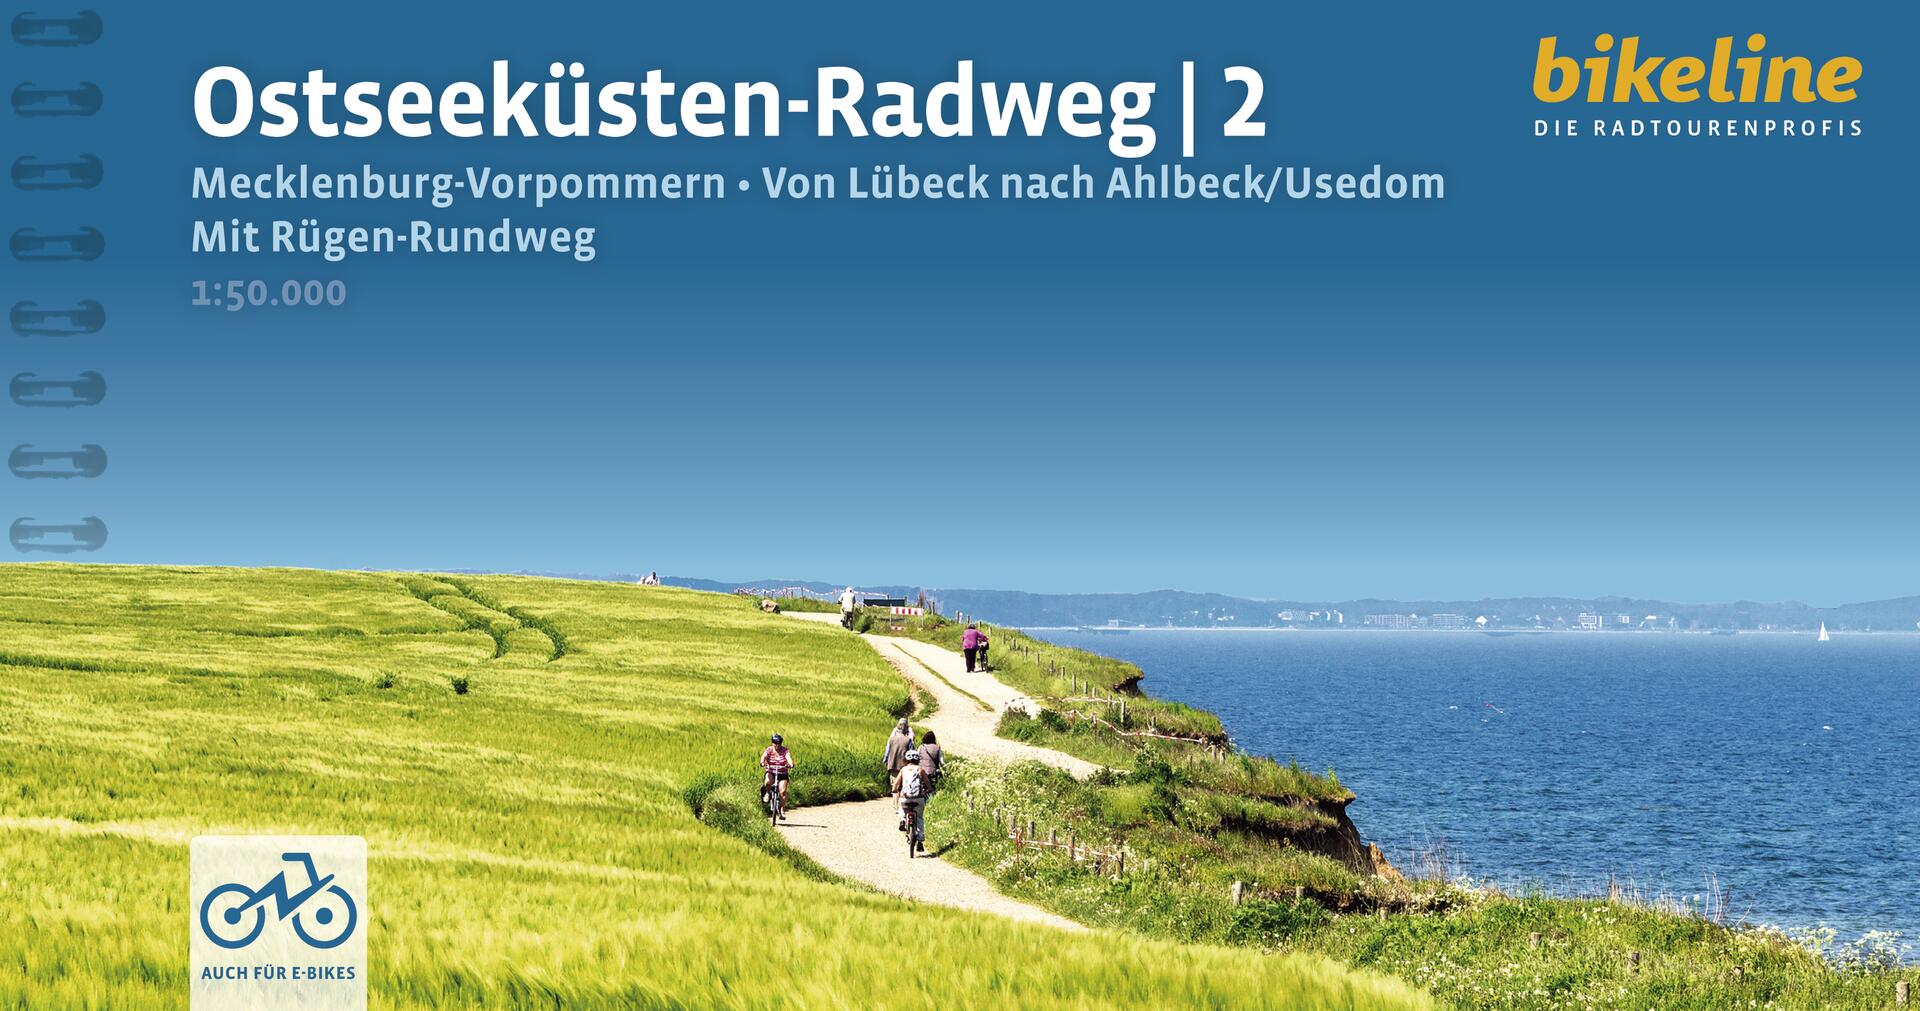 Ostseeküsten-Radweg 2 Mecklenburg-Vorpommern - Bikeline Radtourenbuch